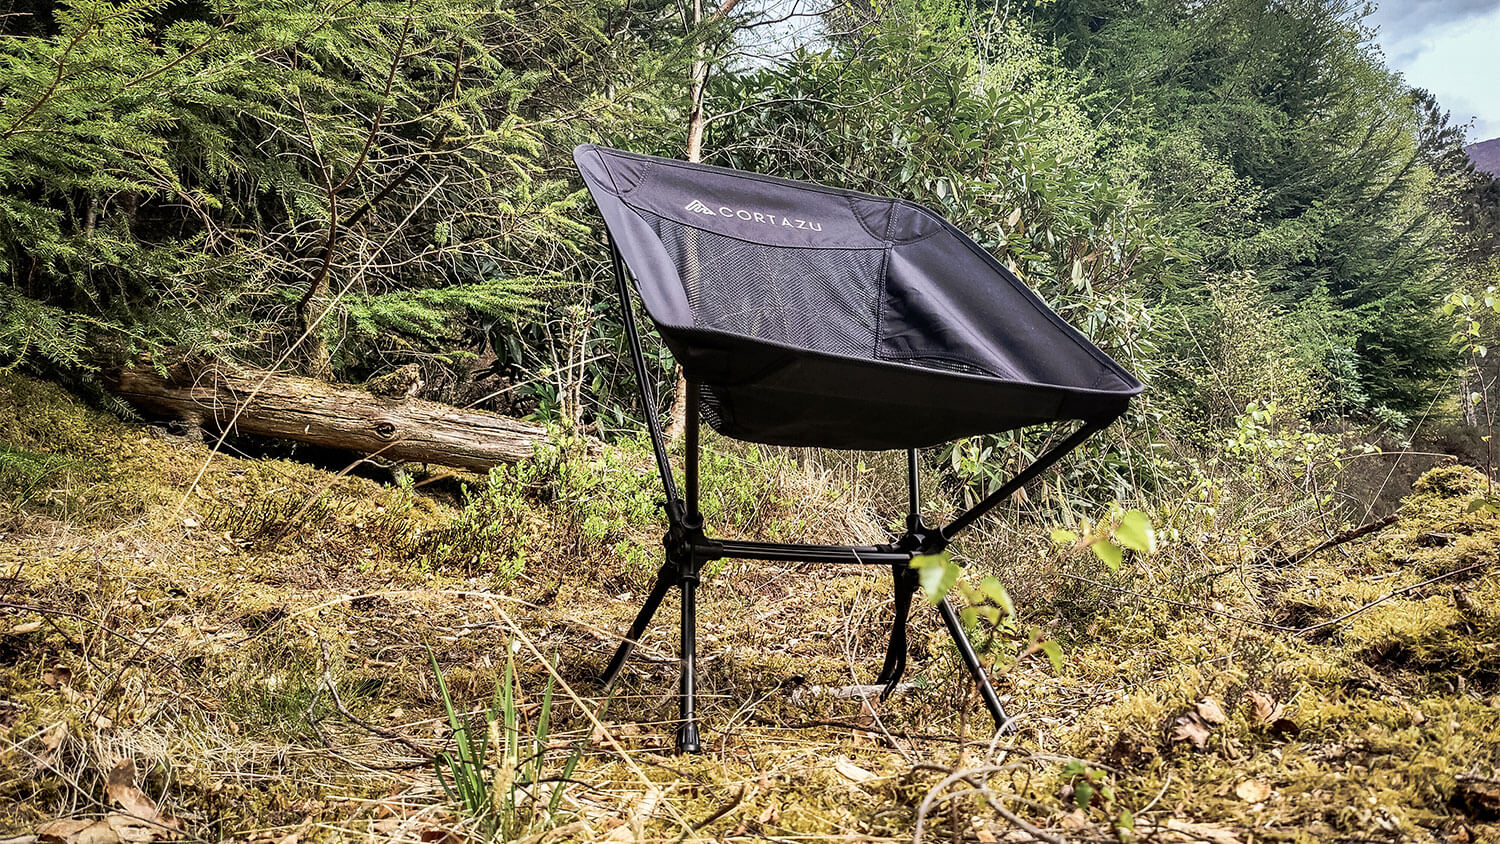 Uitgebreide test van de nieuwe Outdoor Chair van Cortazu